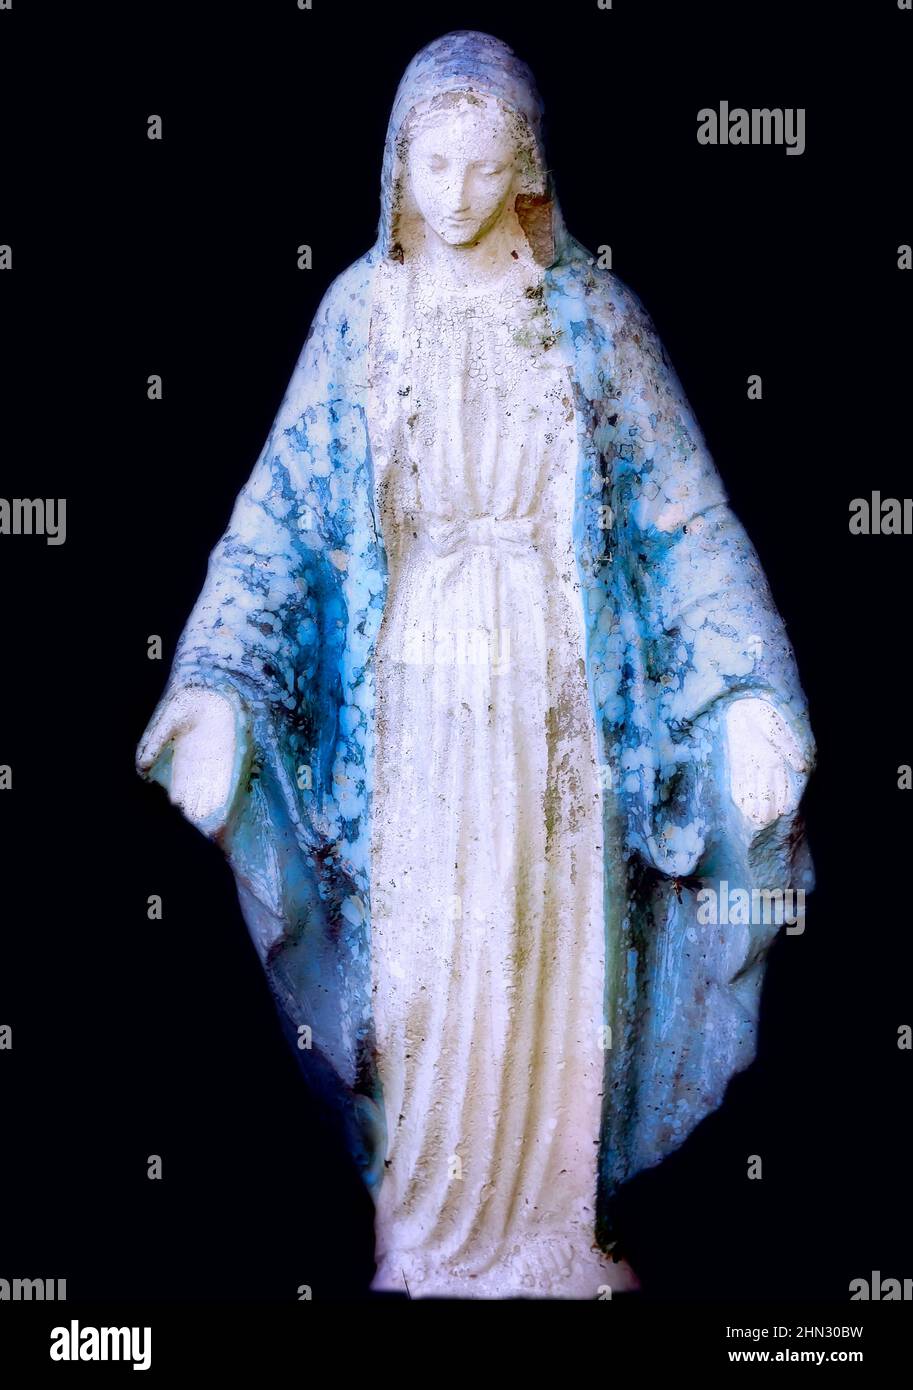 Virgen maria vestida de azul fotografías e imágenes de alta resolución -  Alamy